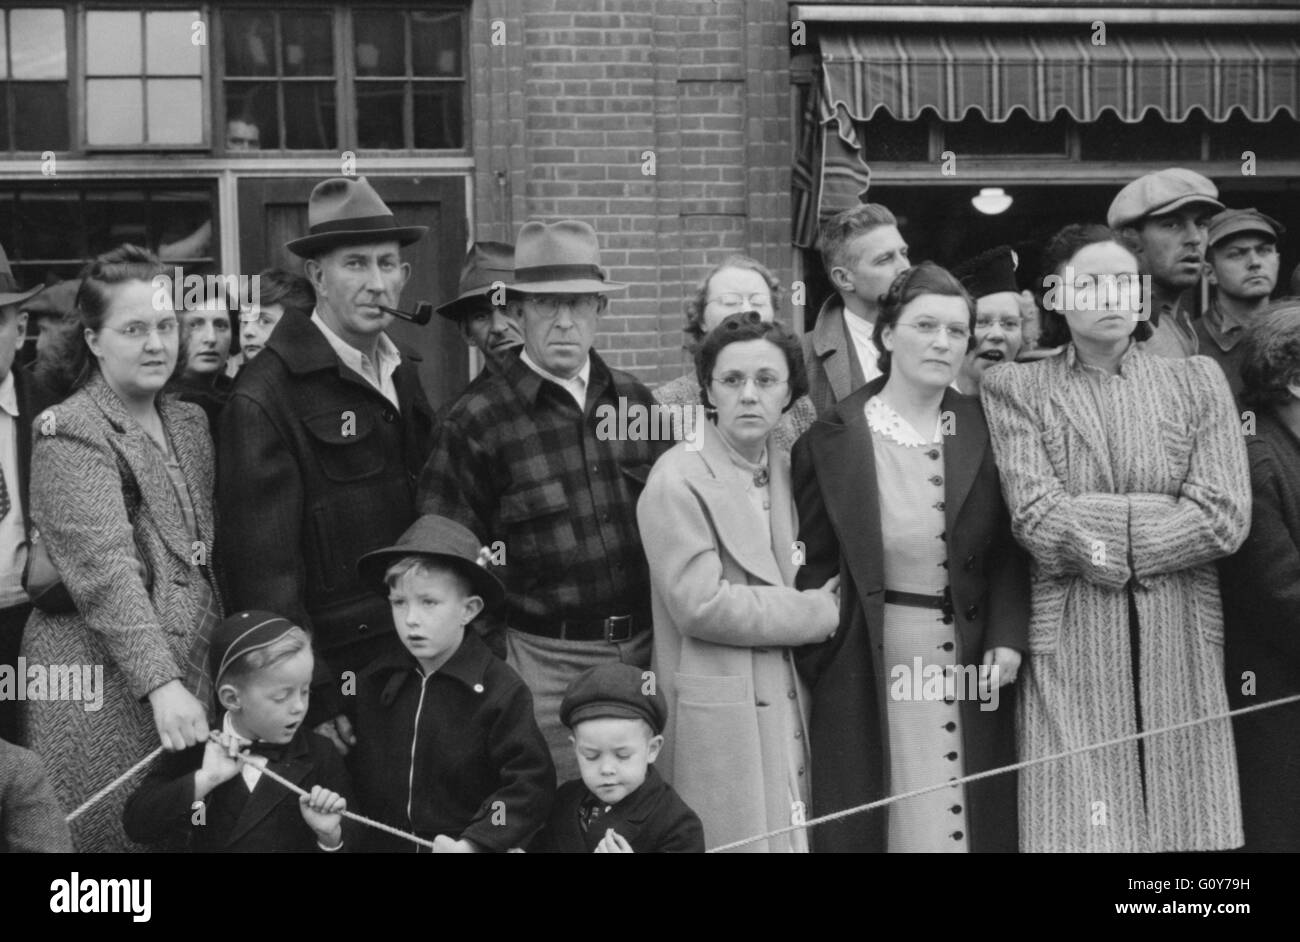 Los espectadores en el Concurso Anual de laminación de barril, Presque Isle, Maine, Estados Unidos, por Jack Delano para la Farm Security Administration, octubre de 1940 Foto de stock